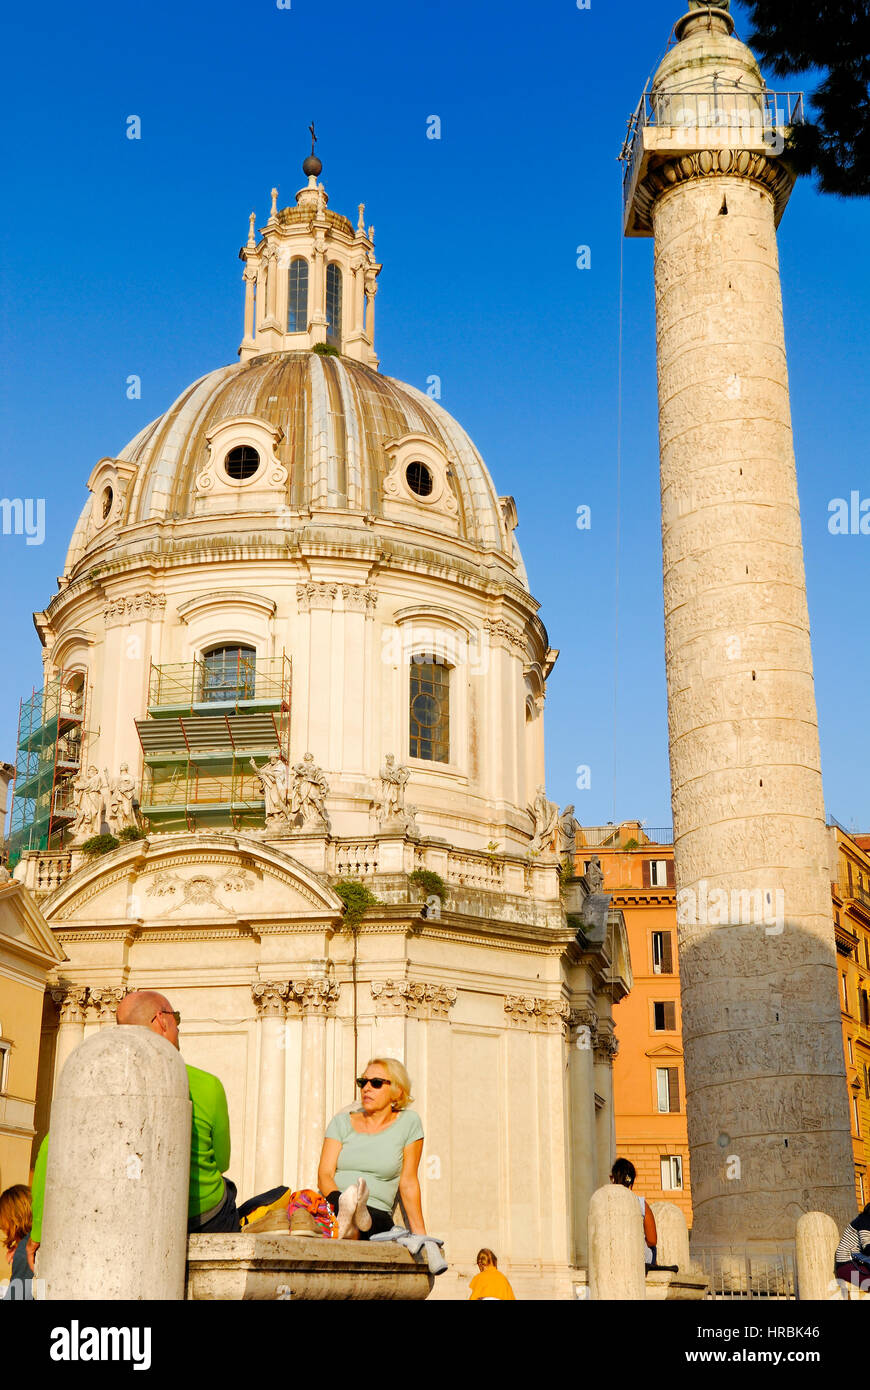 SANTA MARIA DI LORETO CHURCH AND TRAJAN'S COLUMN, ROMAN FORUM, ROME'S HISTORIC CENTER, ITALY. Stock Photo